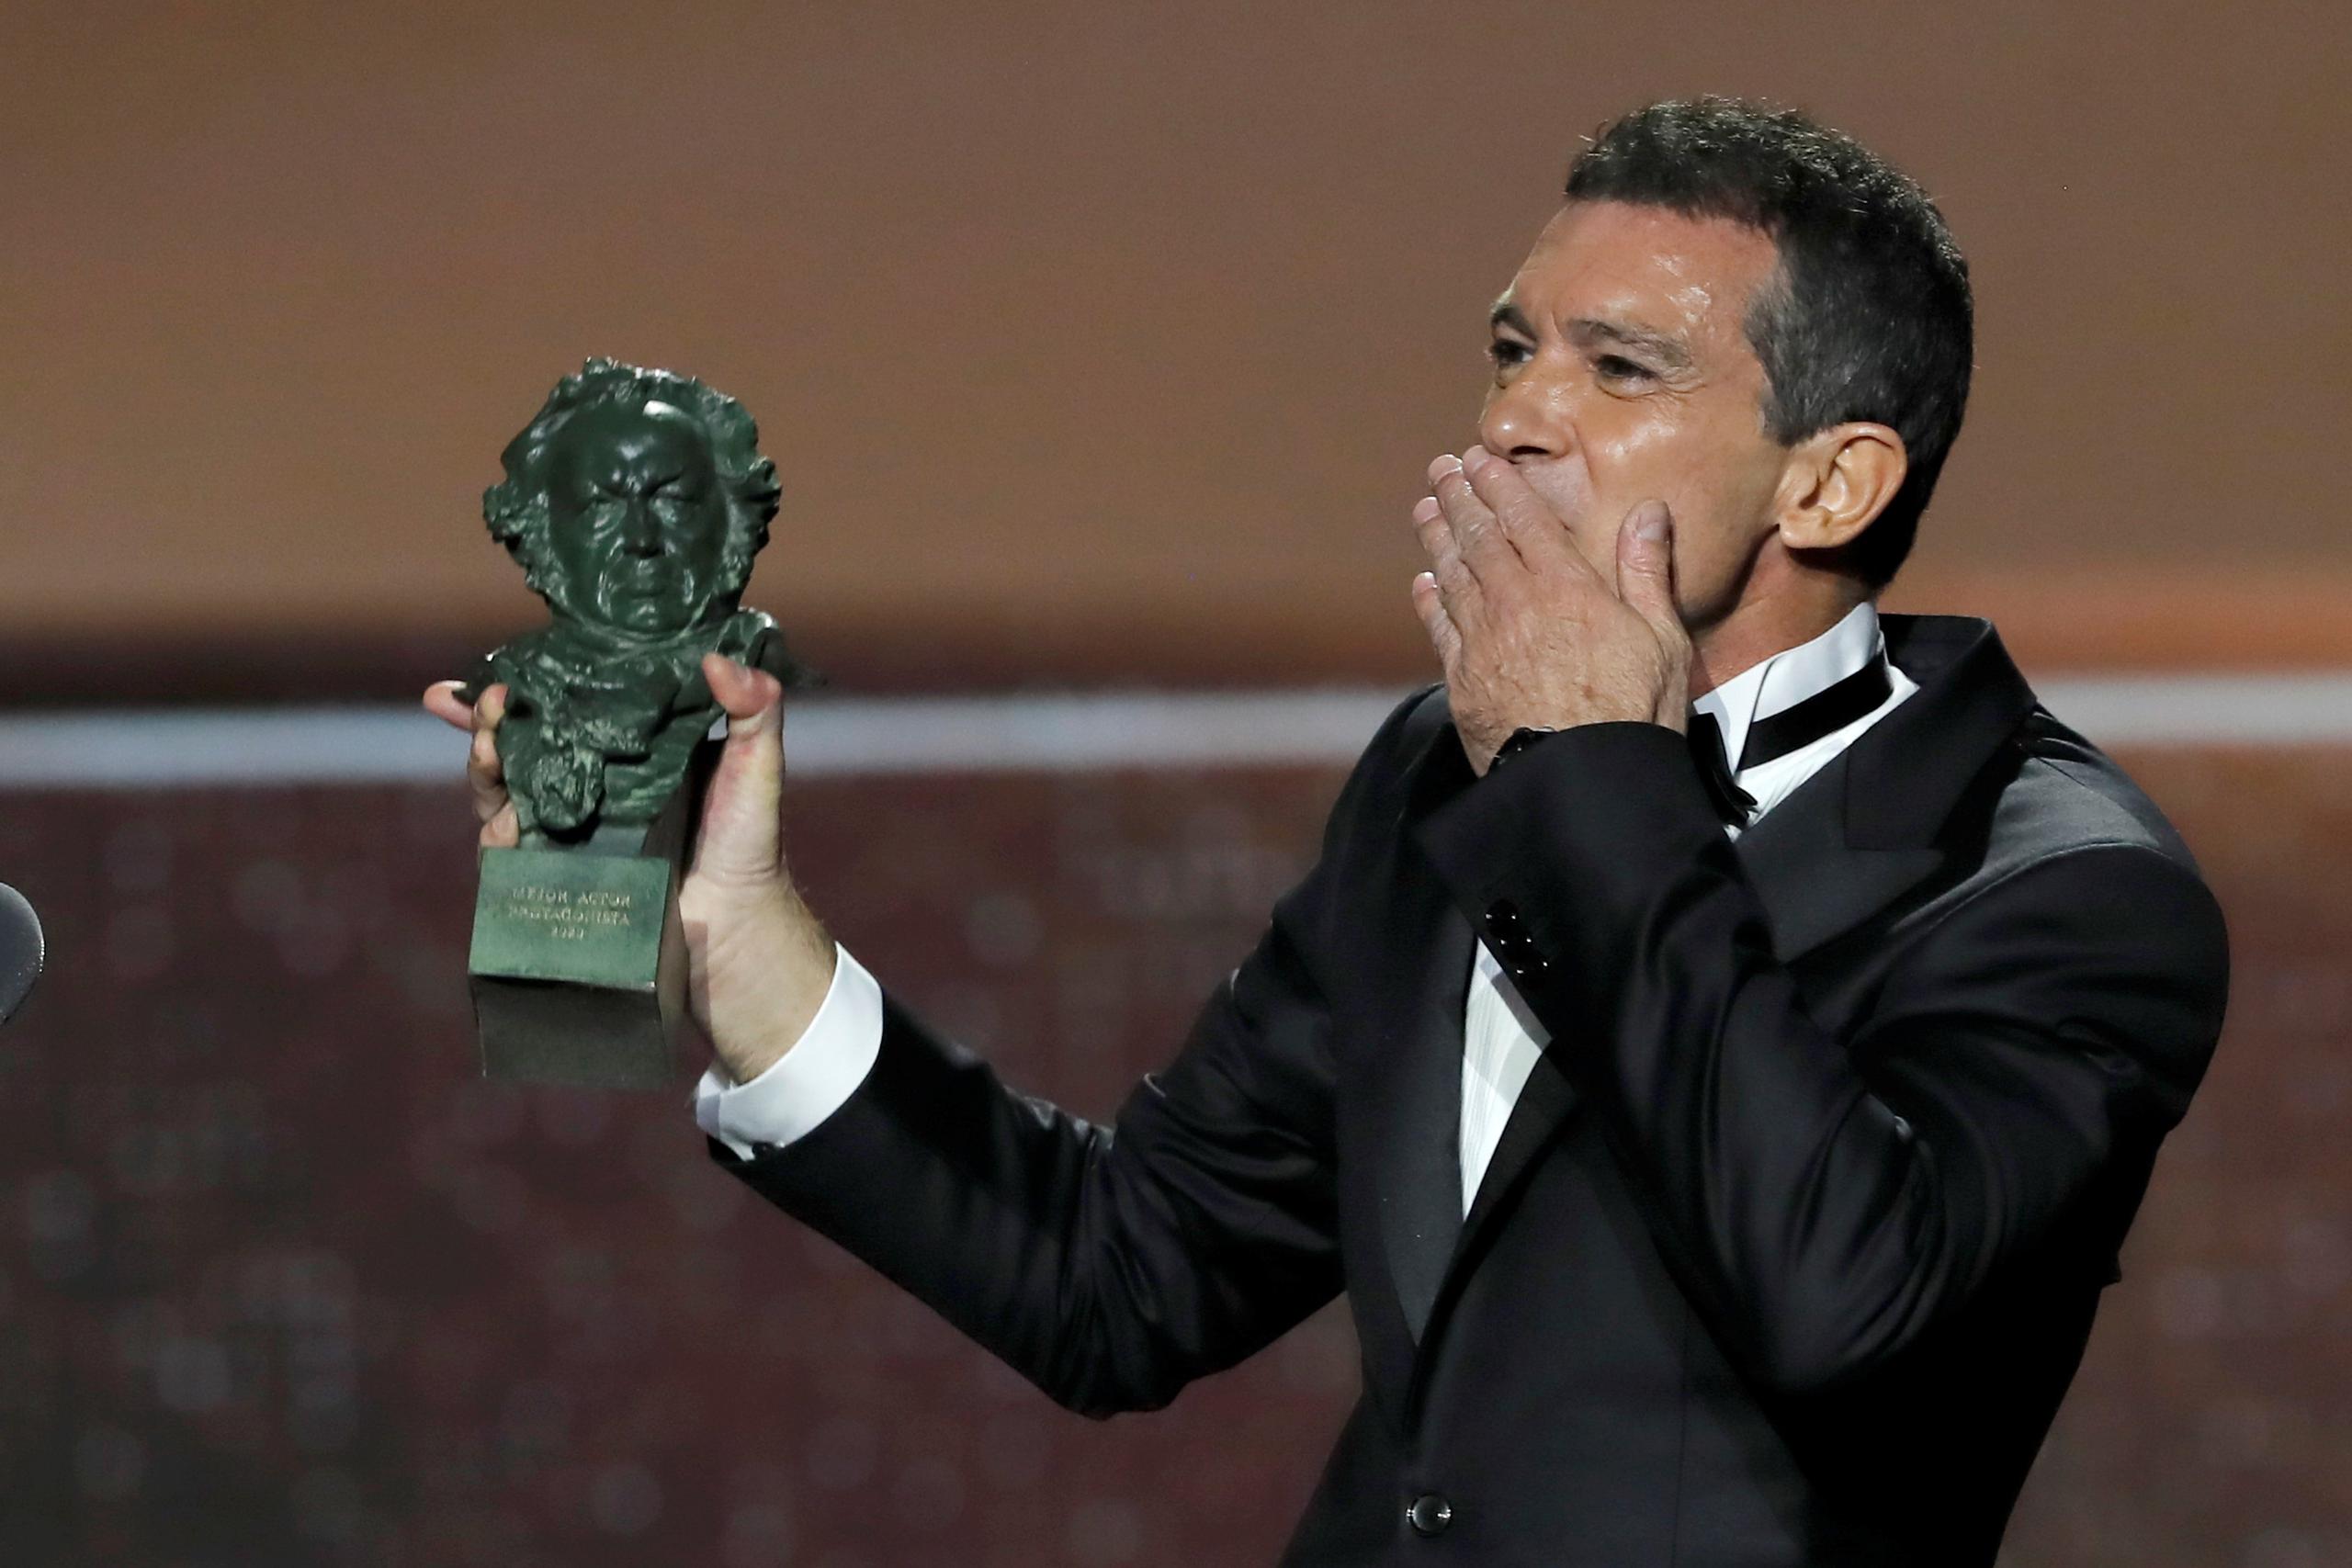 Antonio Banderas, quien recibió previamente el Goya al mejor actor protagonista por su trabajo en "Dolor y Gloria", presentará la ceremonia junto con María Casado.